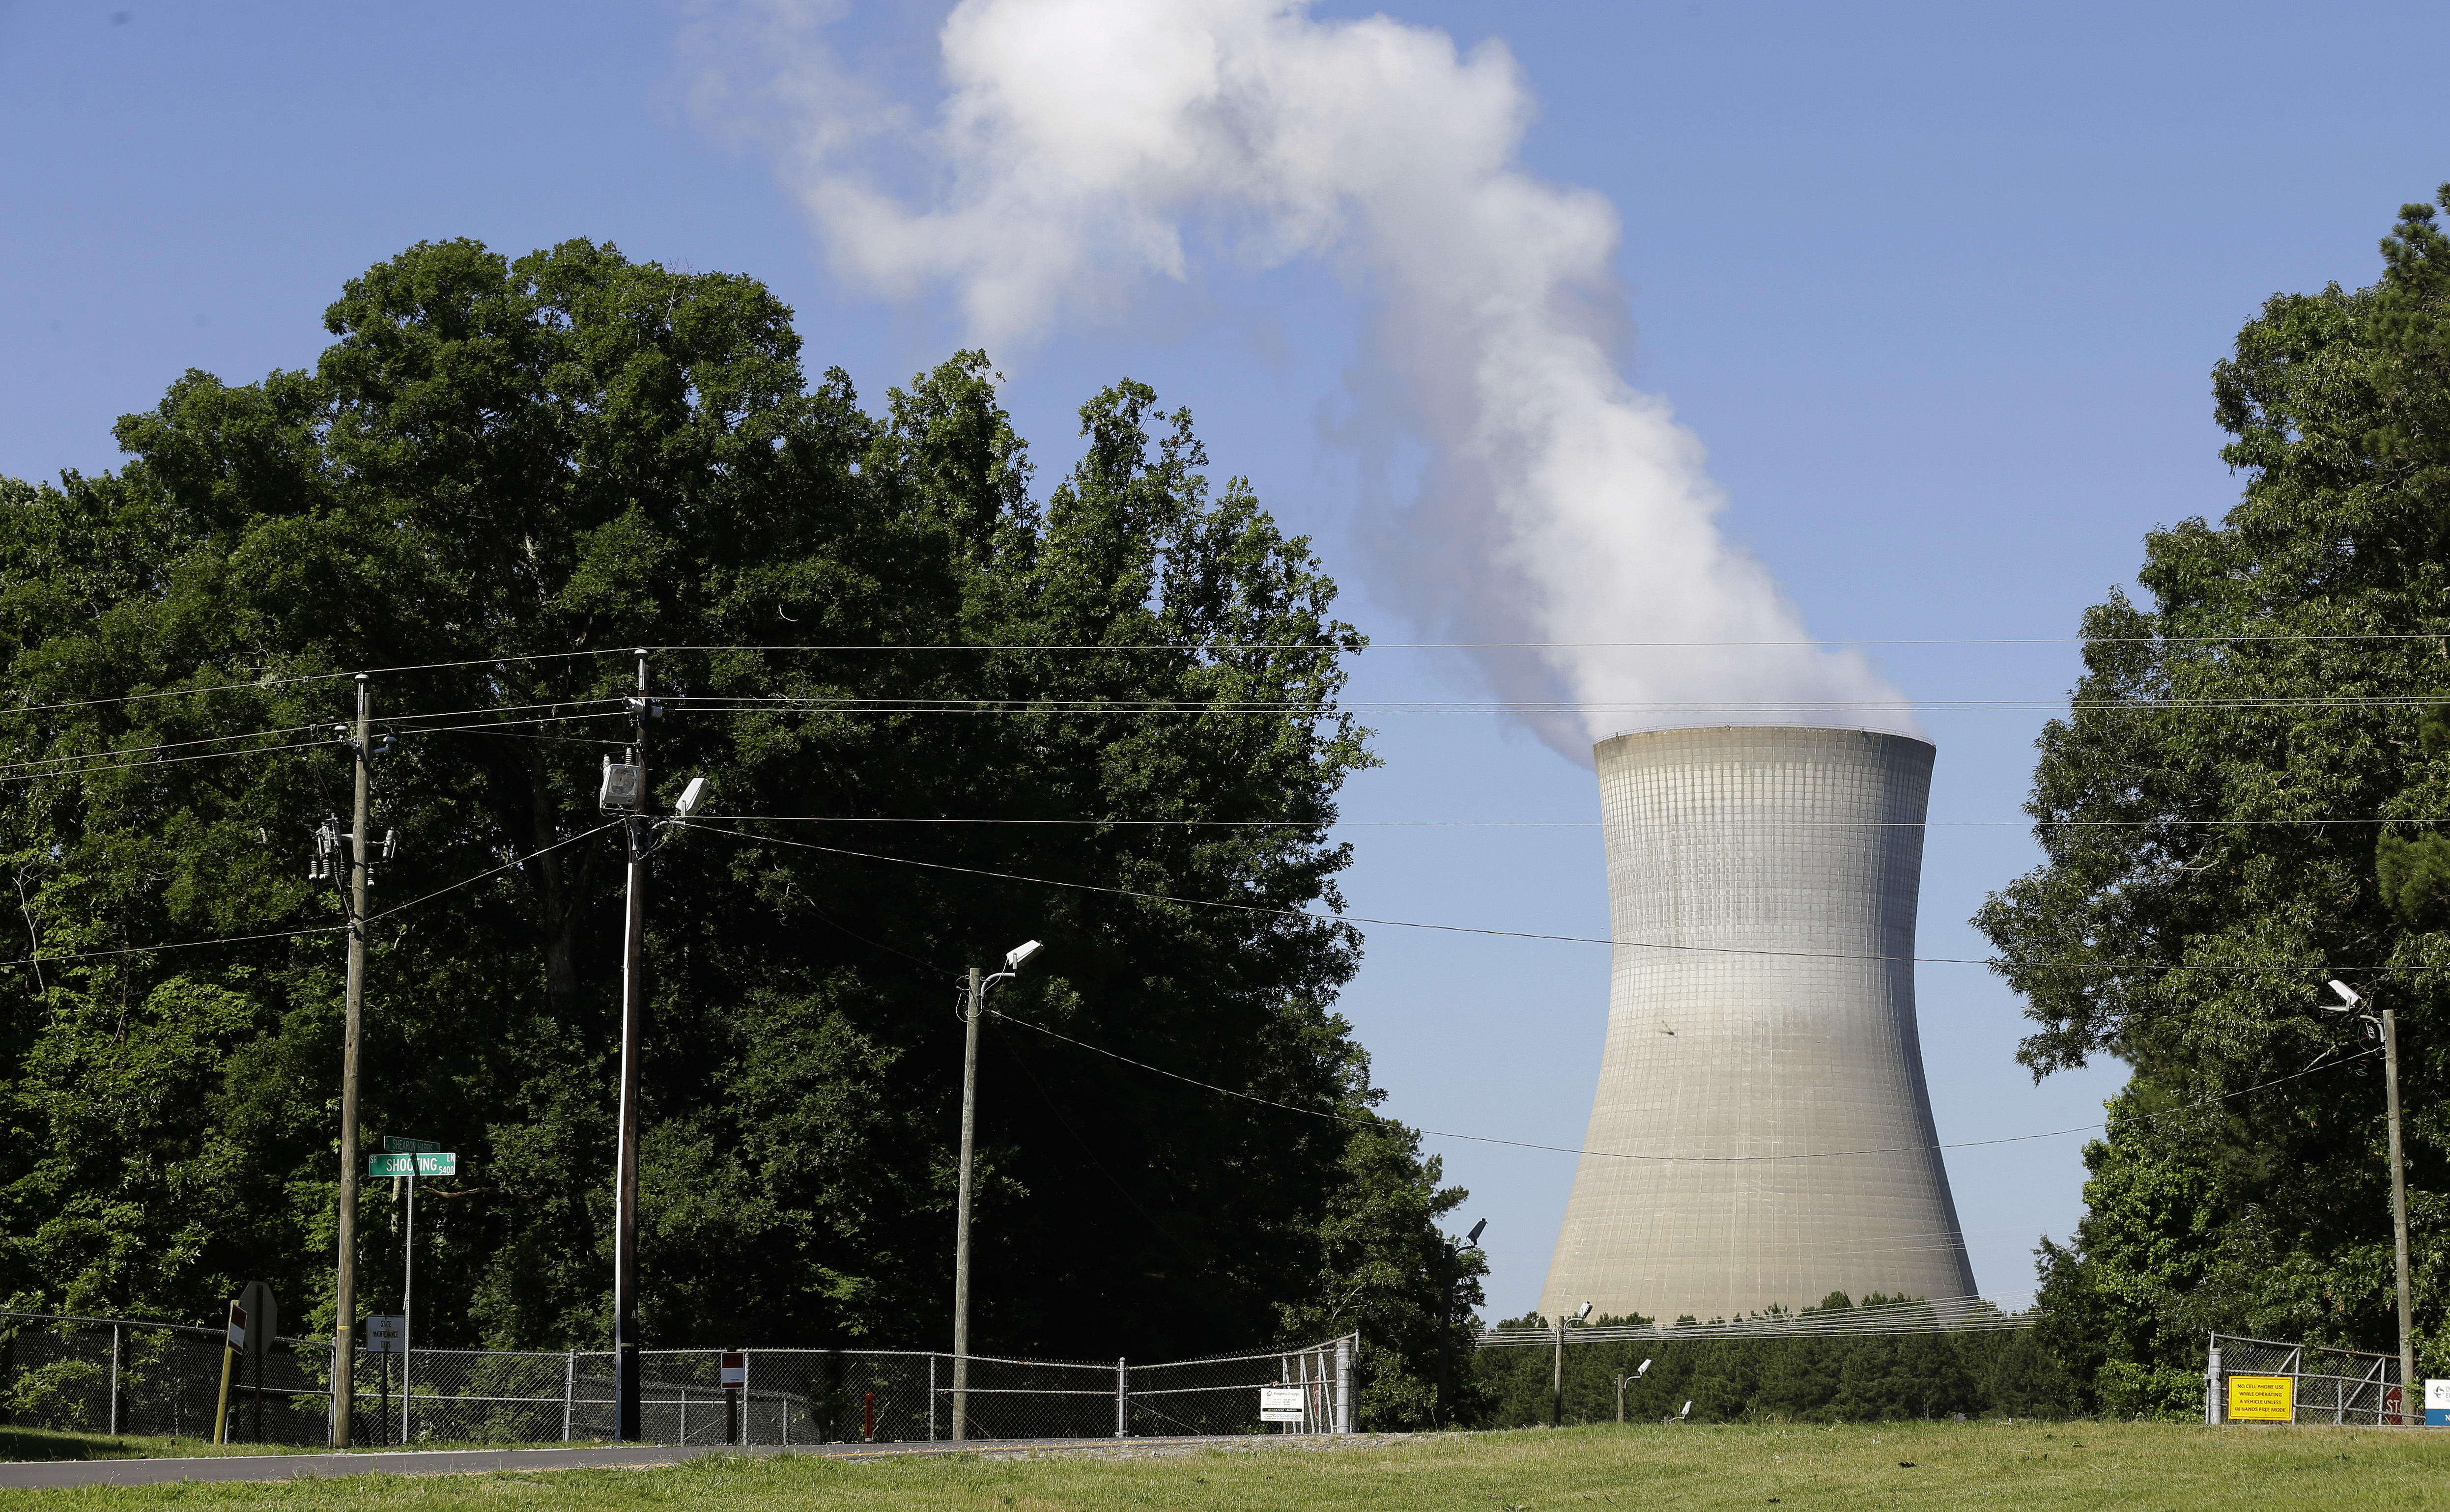 Malfunction triggers sirens at North Carolina nuclear